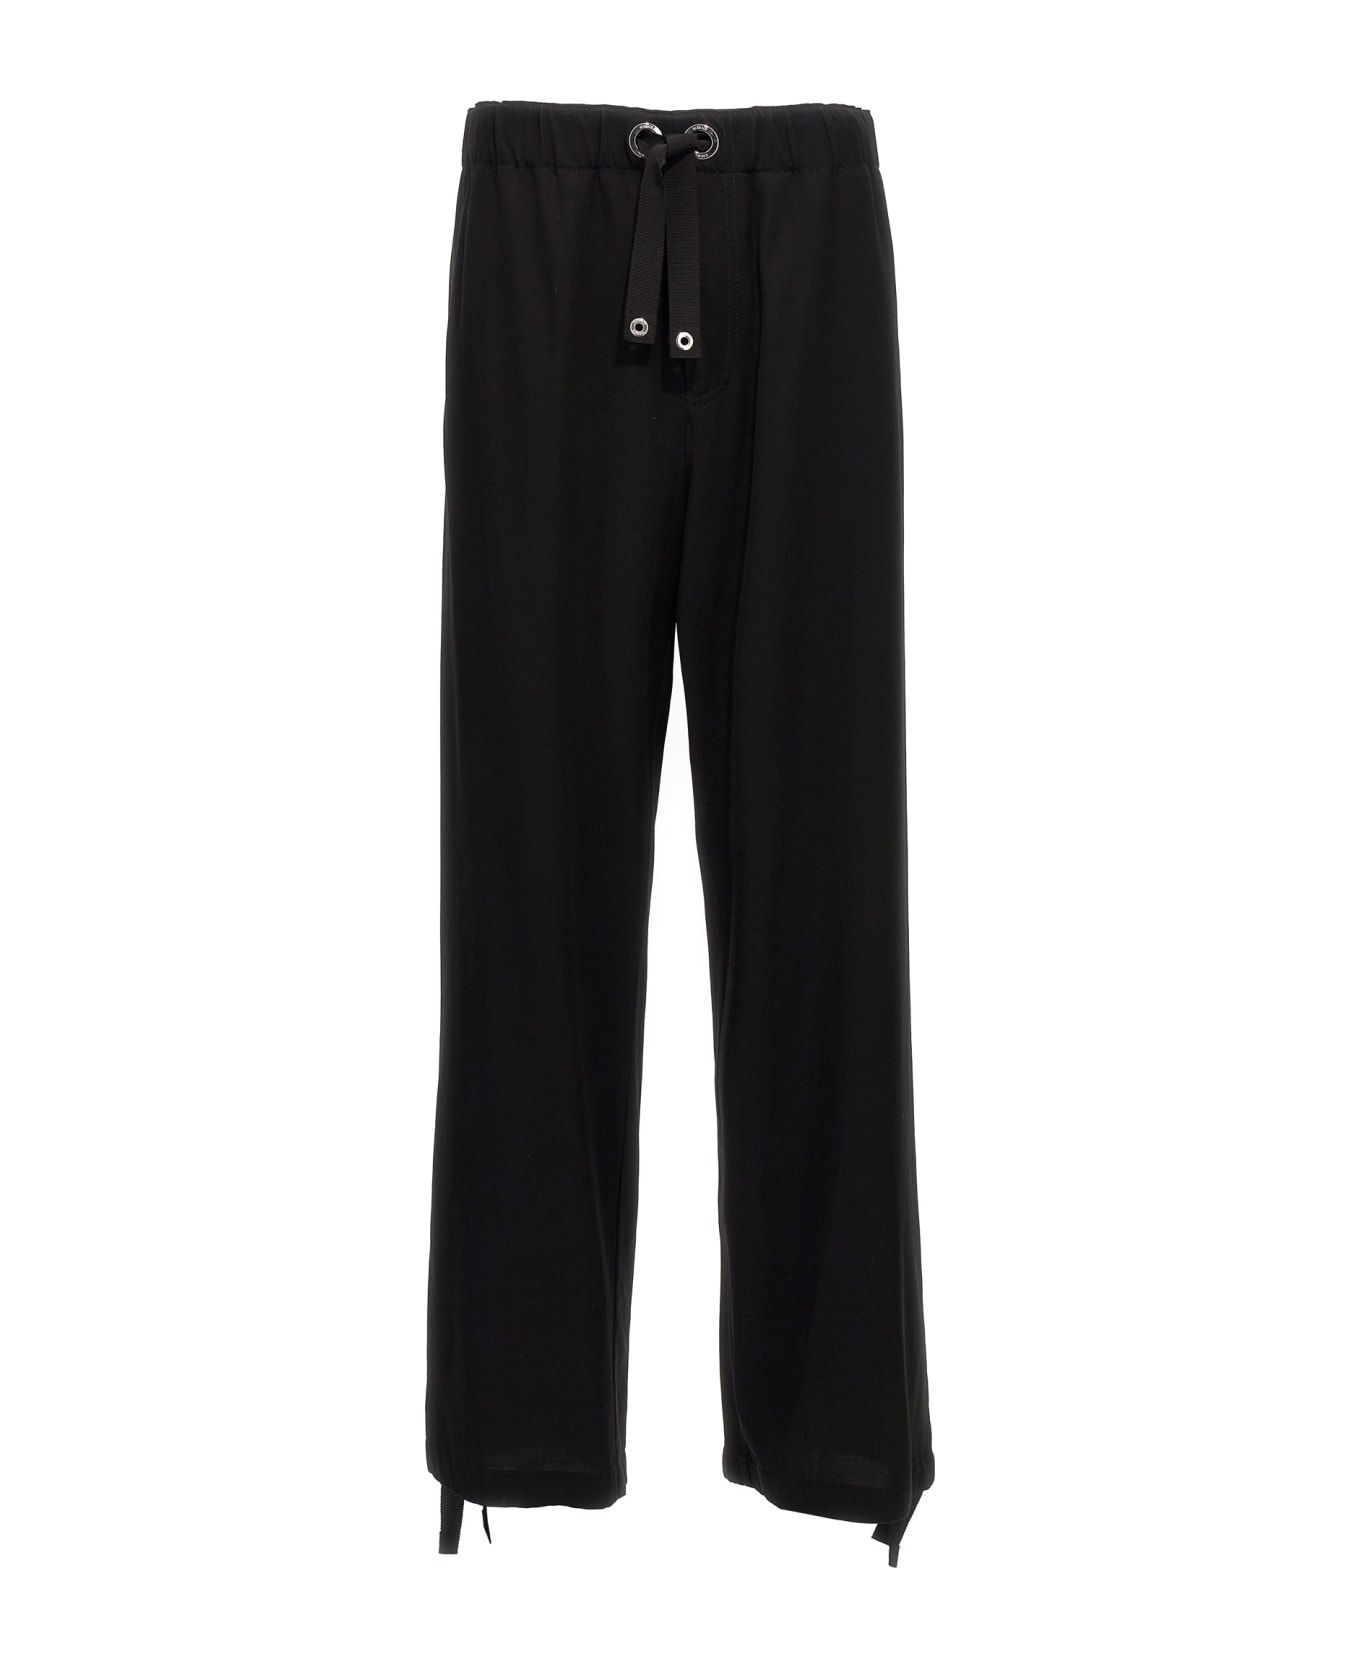 Versace Twill Pants - Black スウェットパンツ